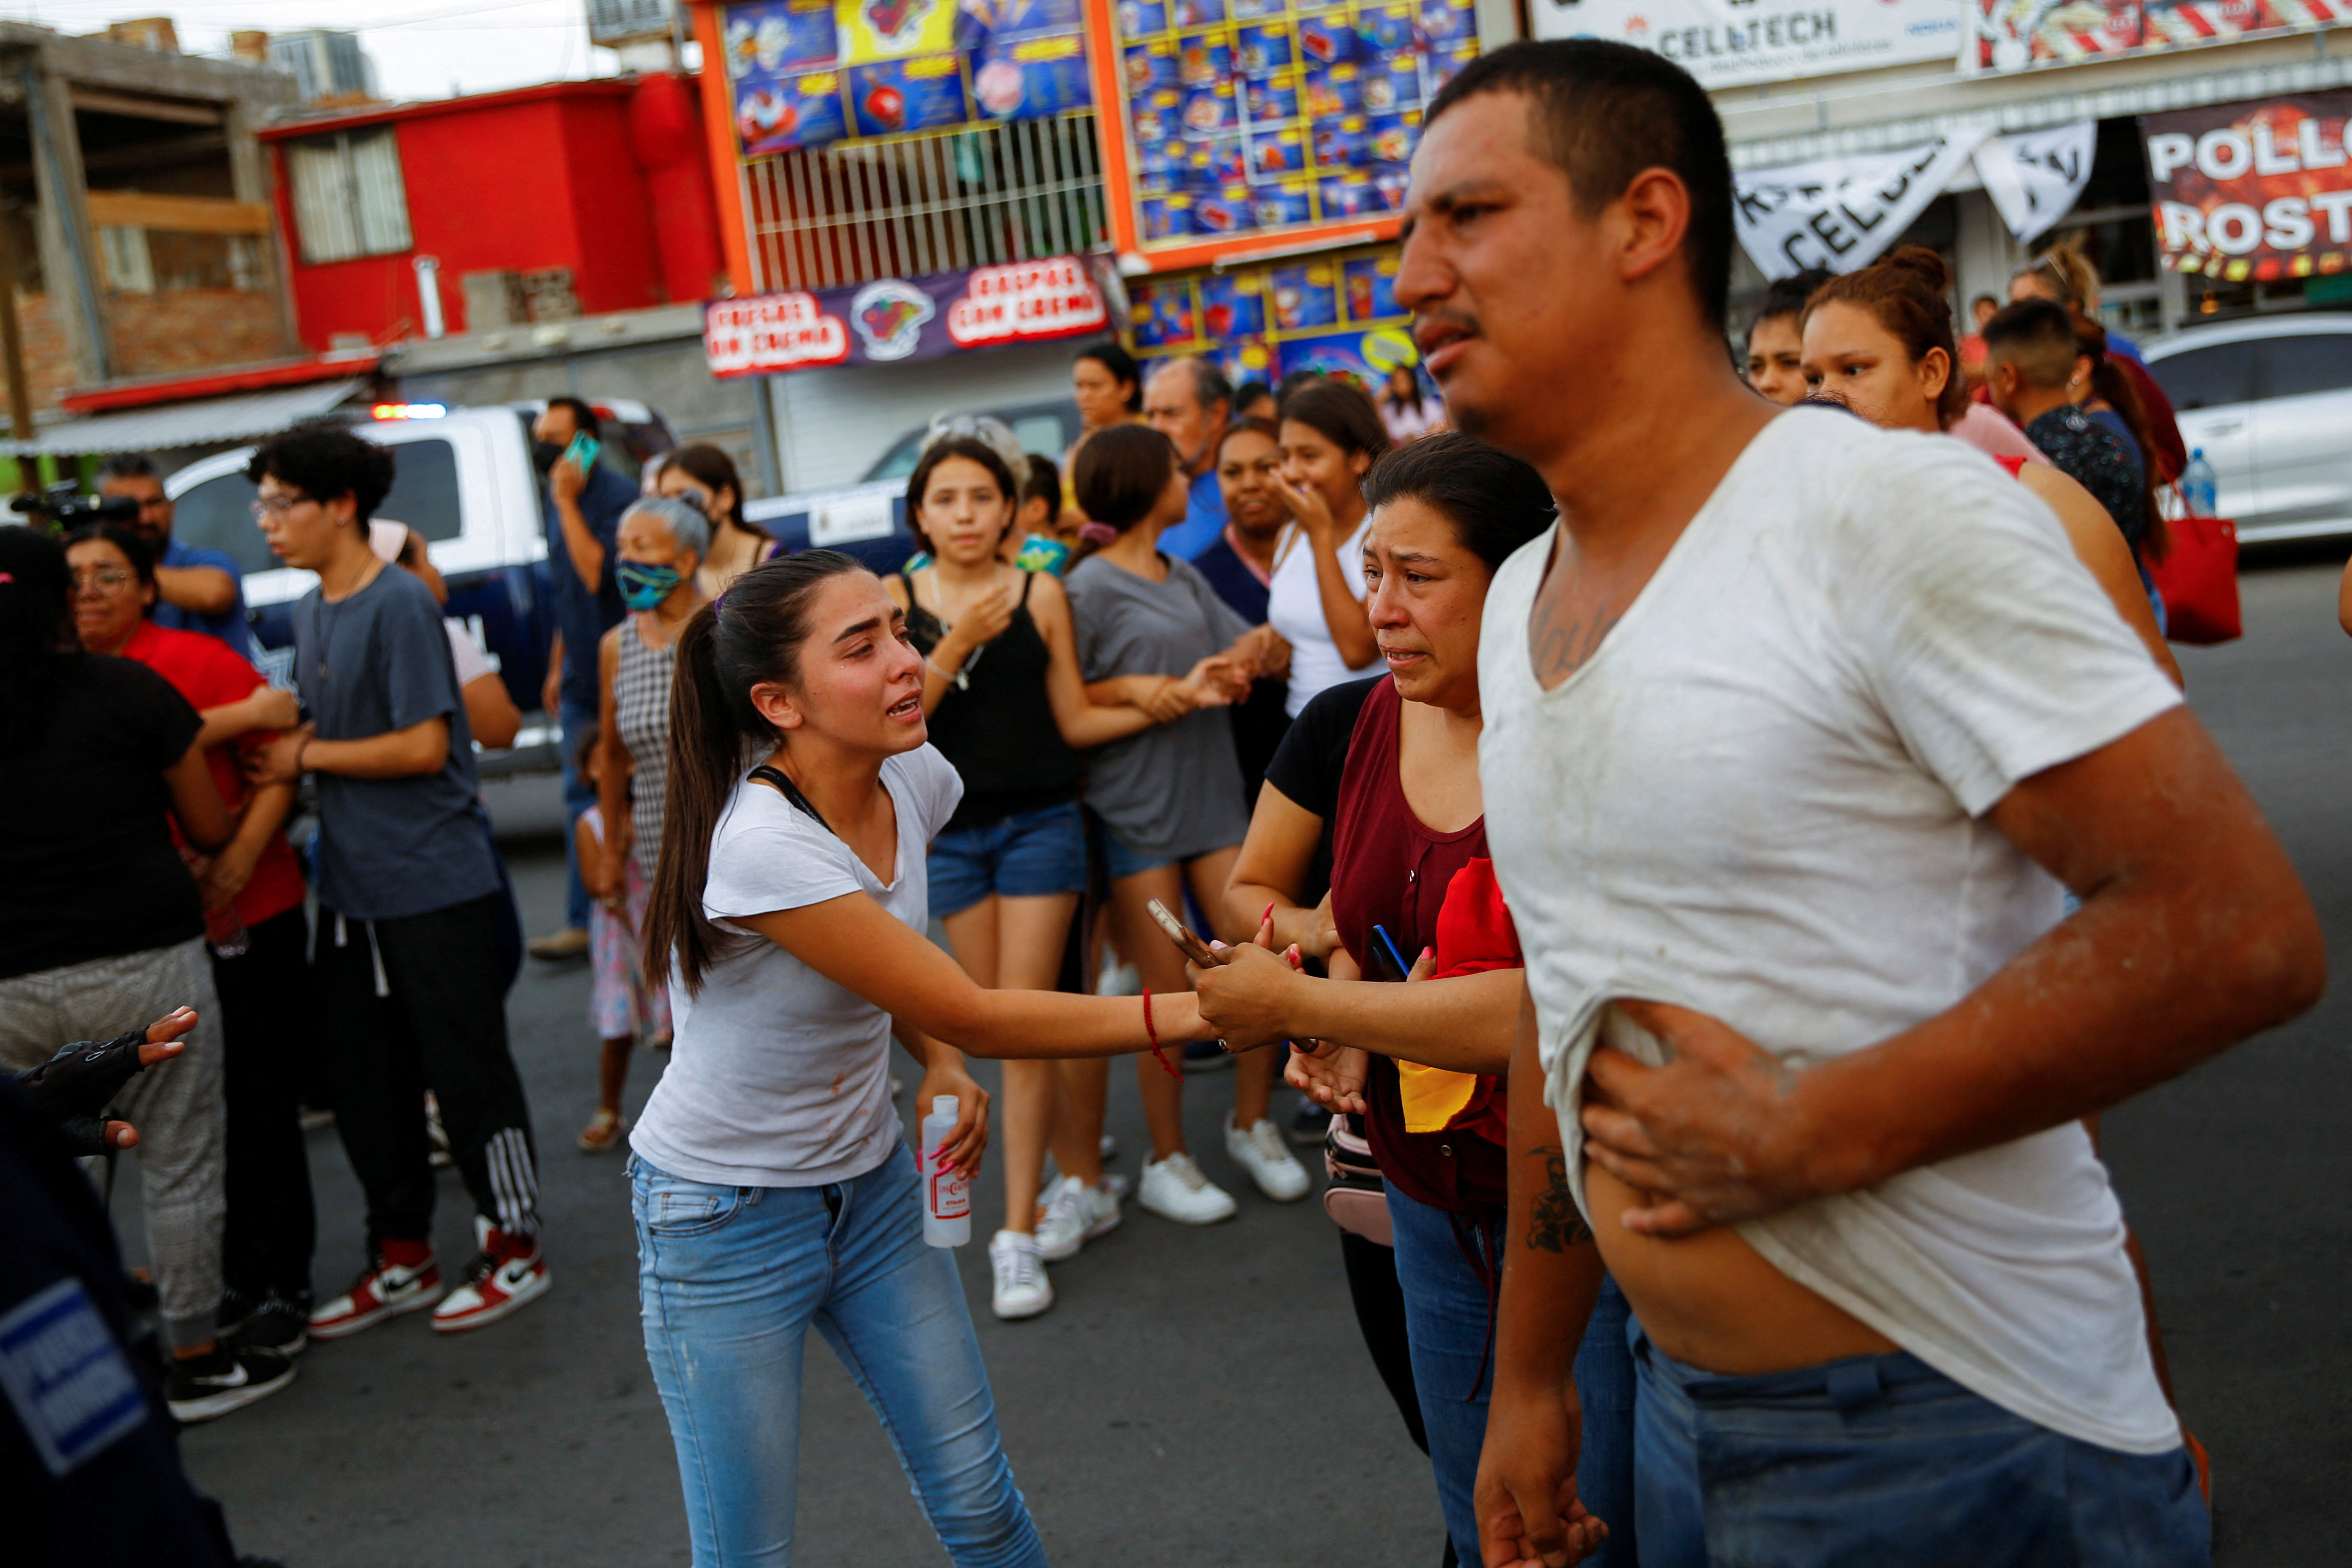 Los ataques se dieron después de una riña en un Cereso de Ciudad Juárez (REUTERS/Jose Luis Gonzalez)